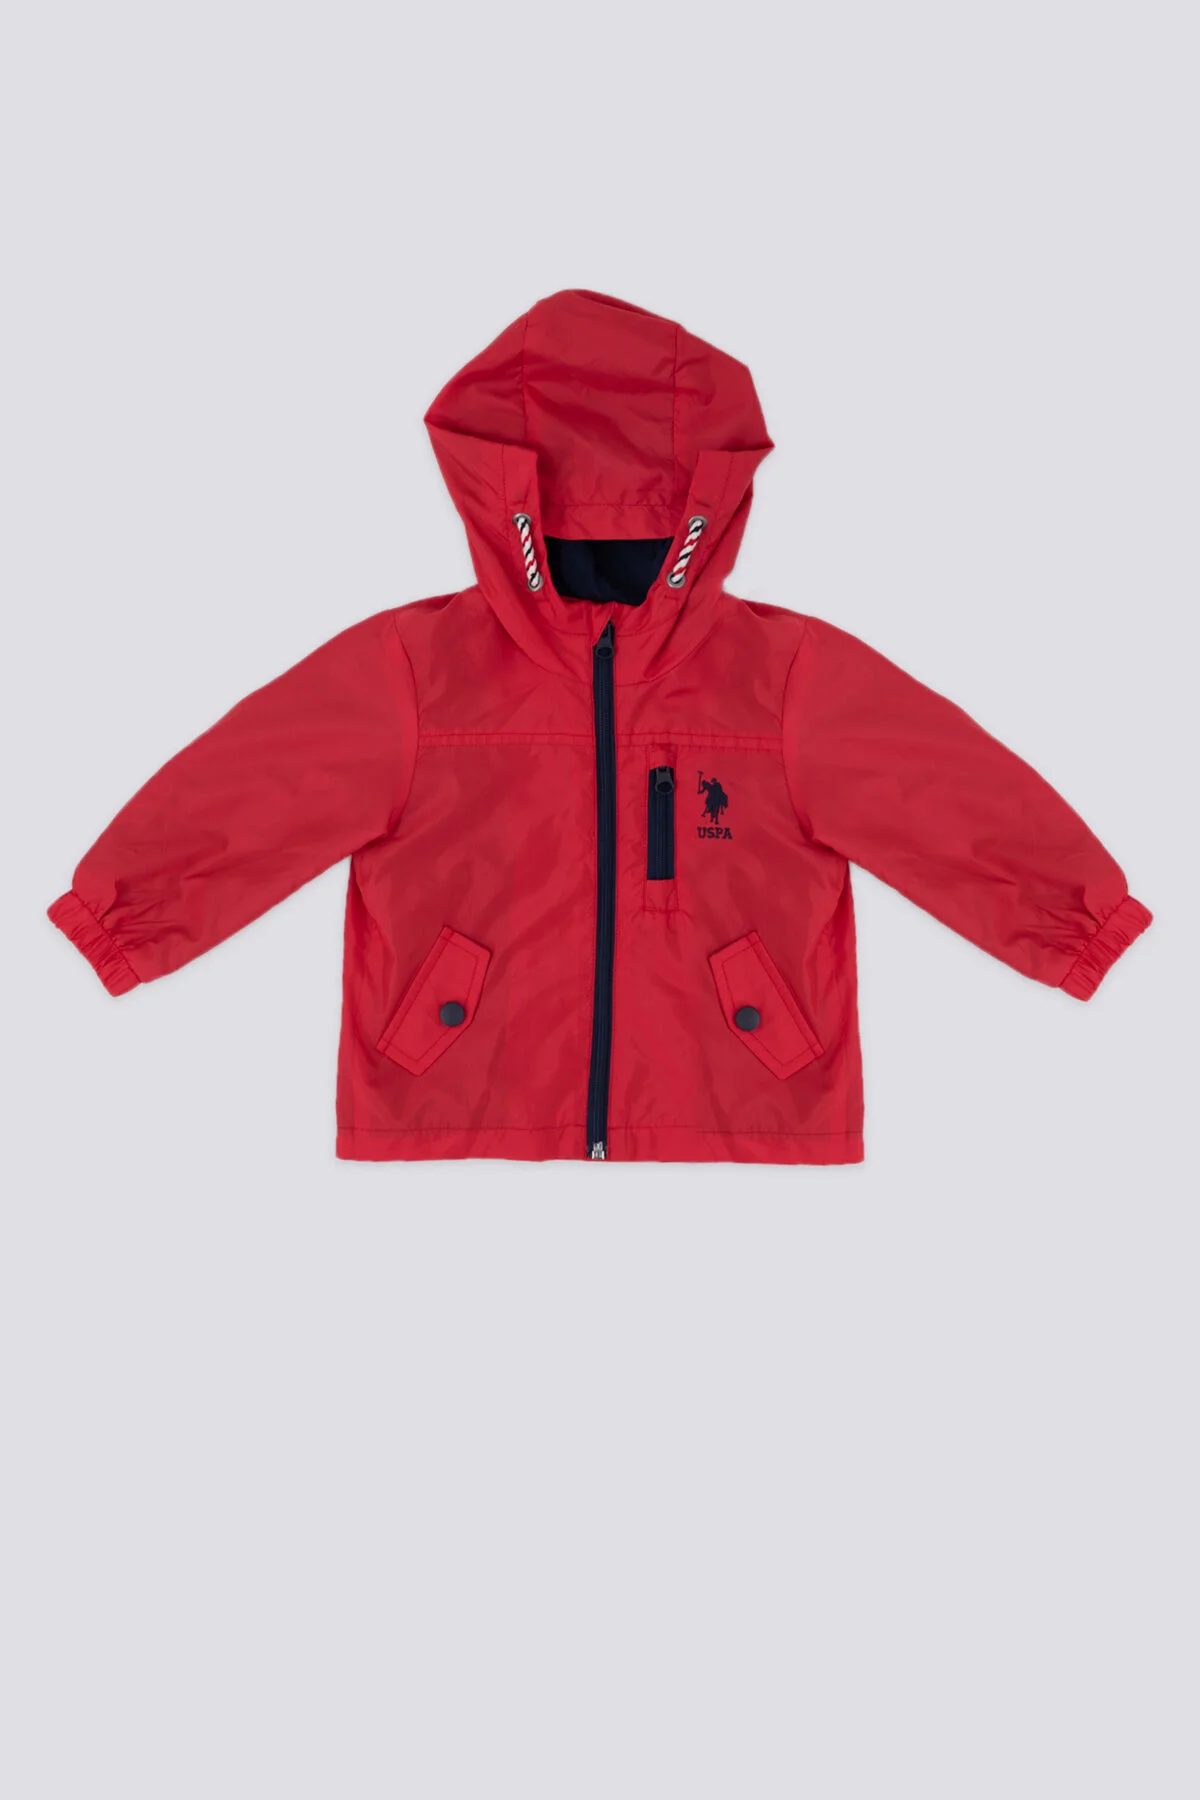 U.S. Polo Erkek Bebek Yağmurluk 1181 Kırmızı